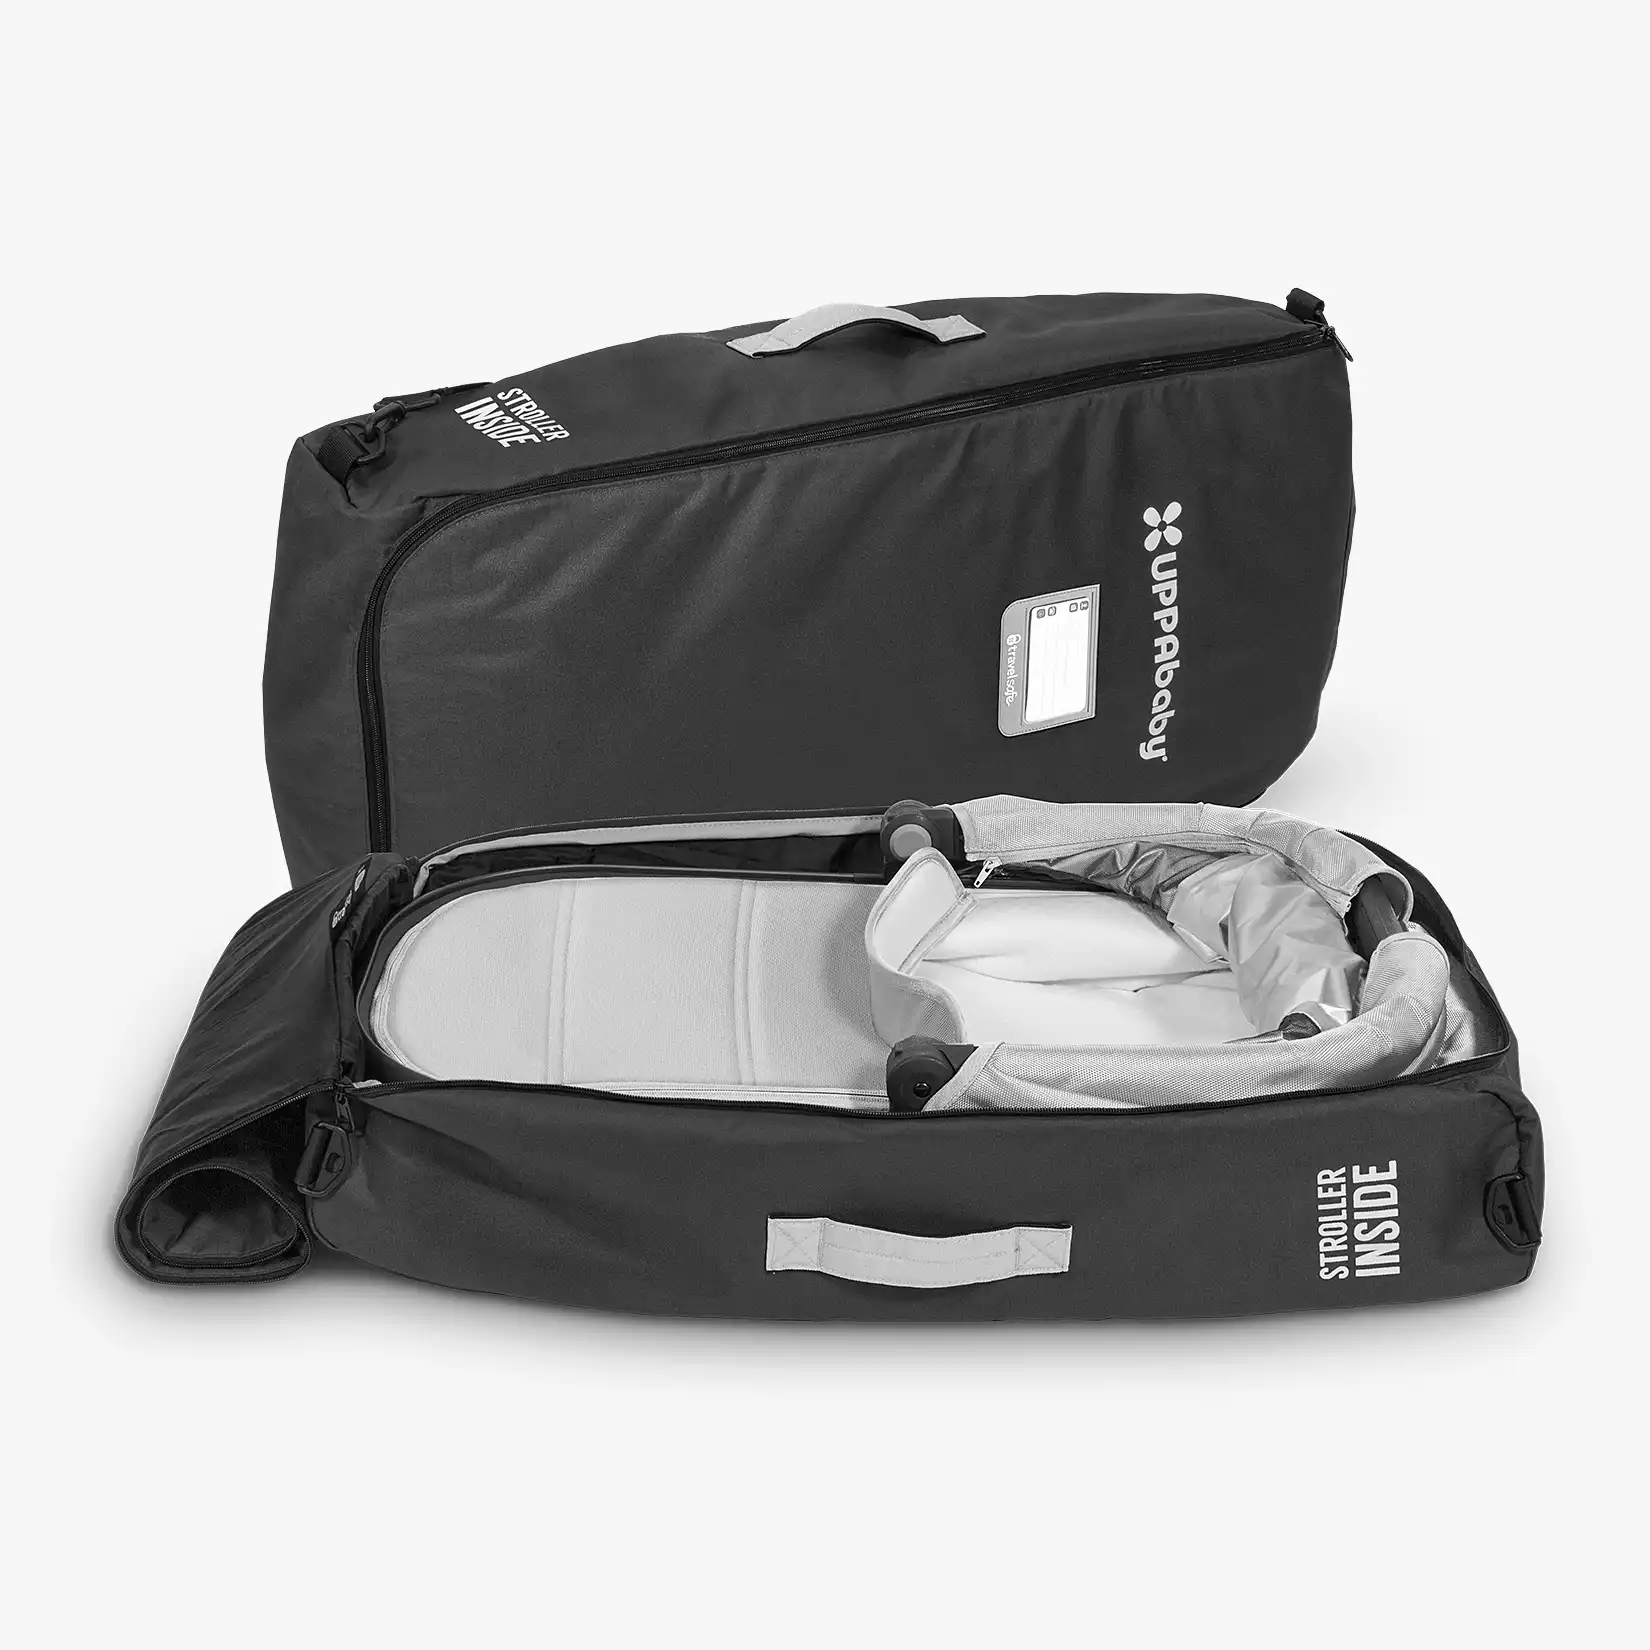 UPPAbaby VISTA and VISTA V2 TravelSafe Travel Bag